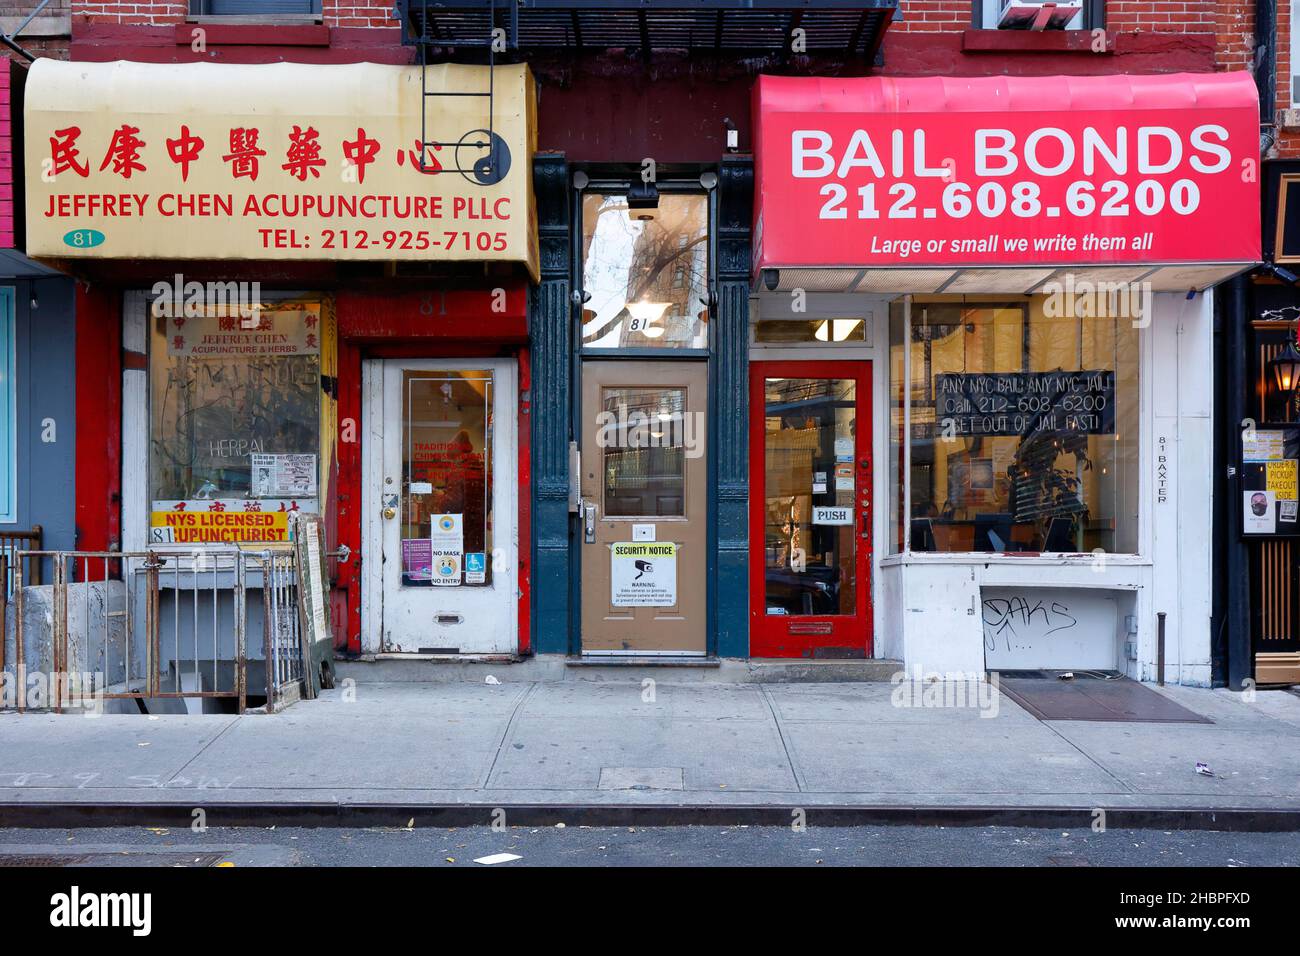 Magasin de l'acupuncteur et de l'attaché de sauvetage, 81 Baxter St, New York, NY, dans le quartier chinois de Manhattan. Banque D'Images